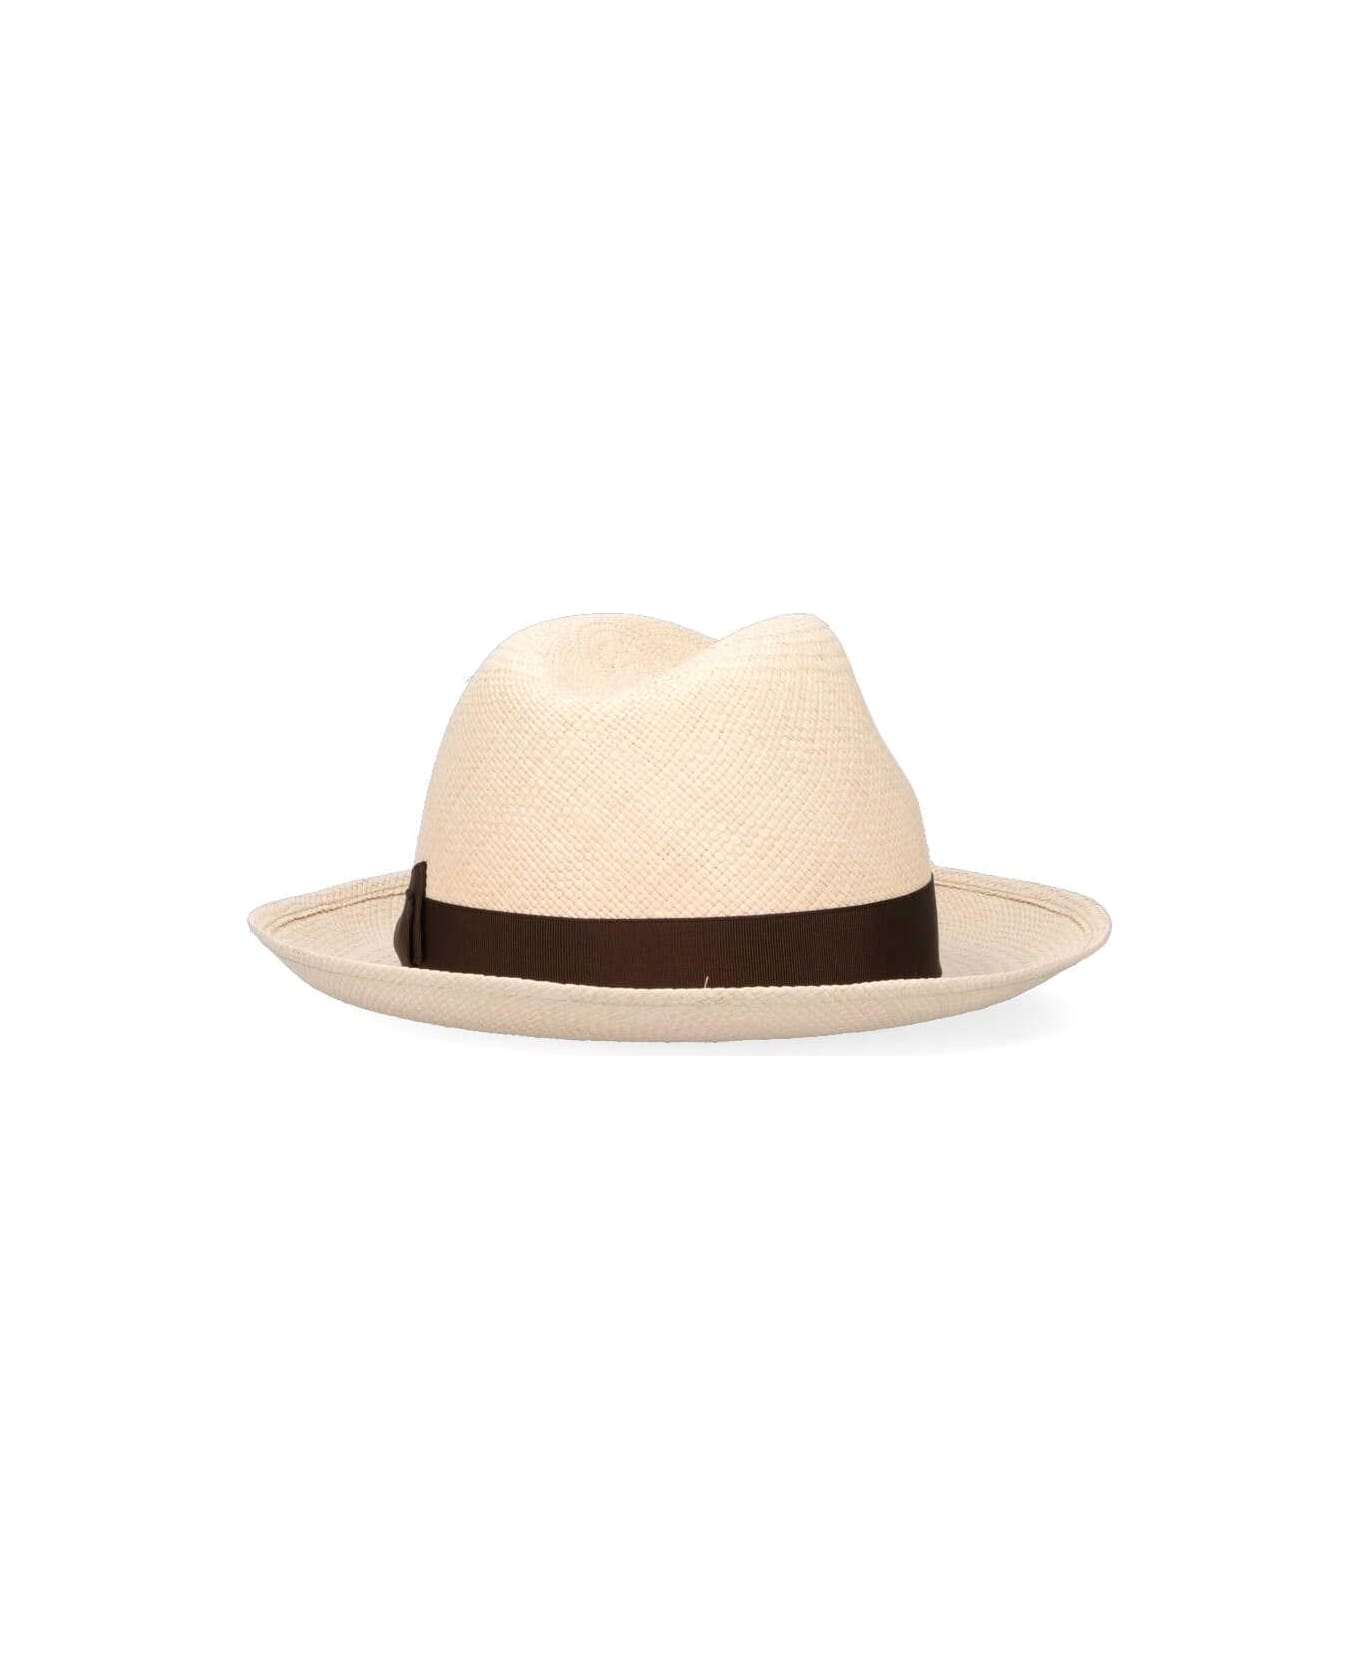 Borsalino 'panama' Hat - Naturale